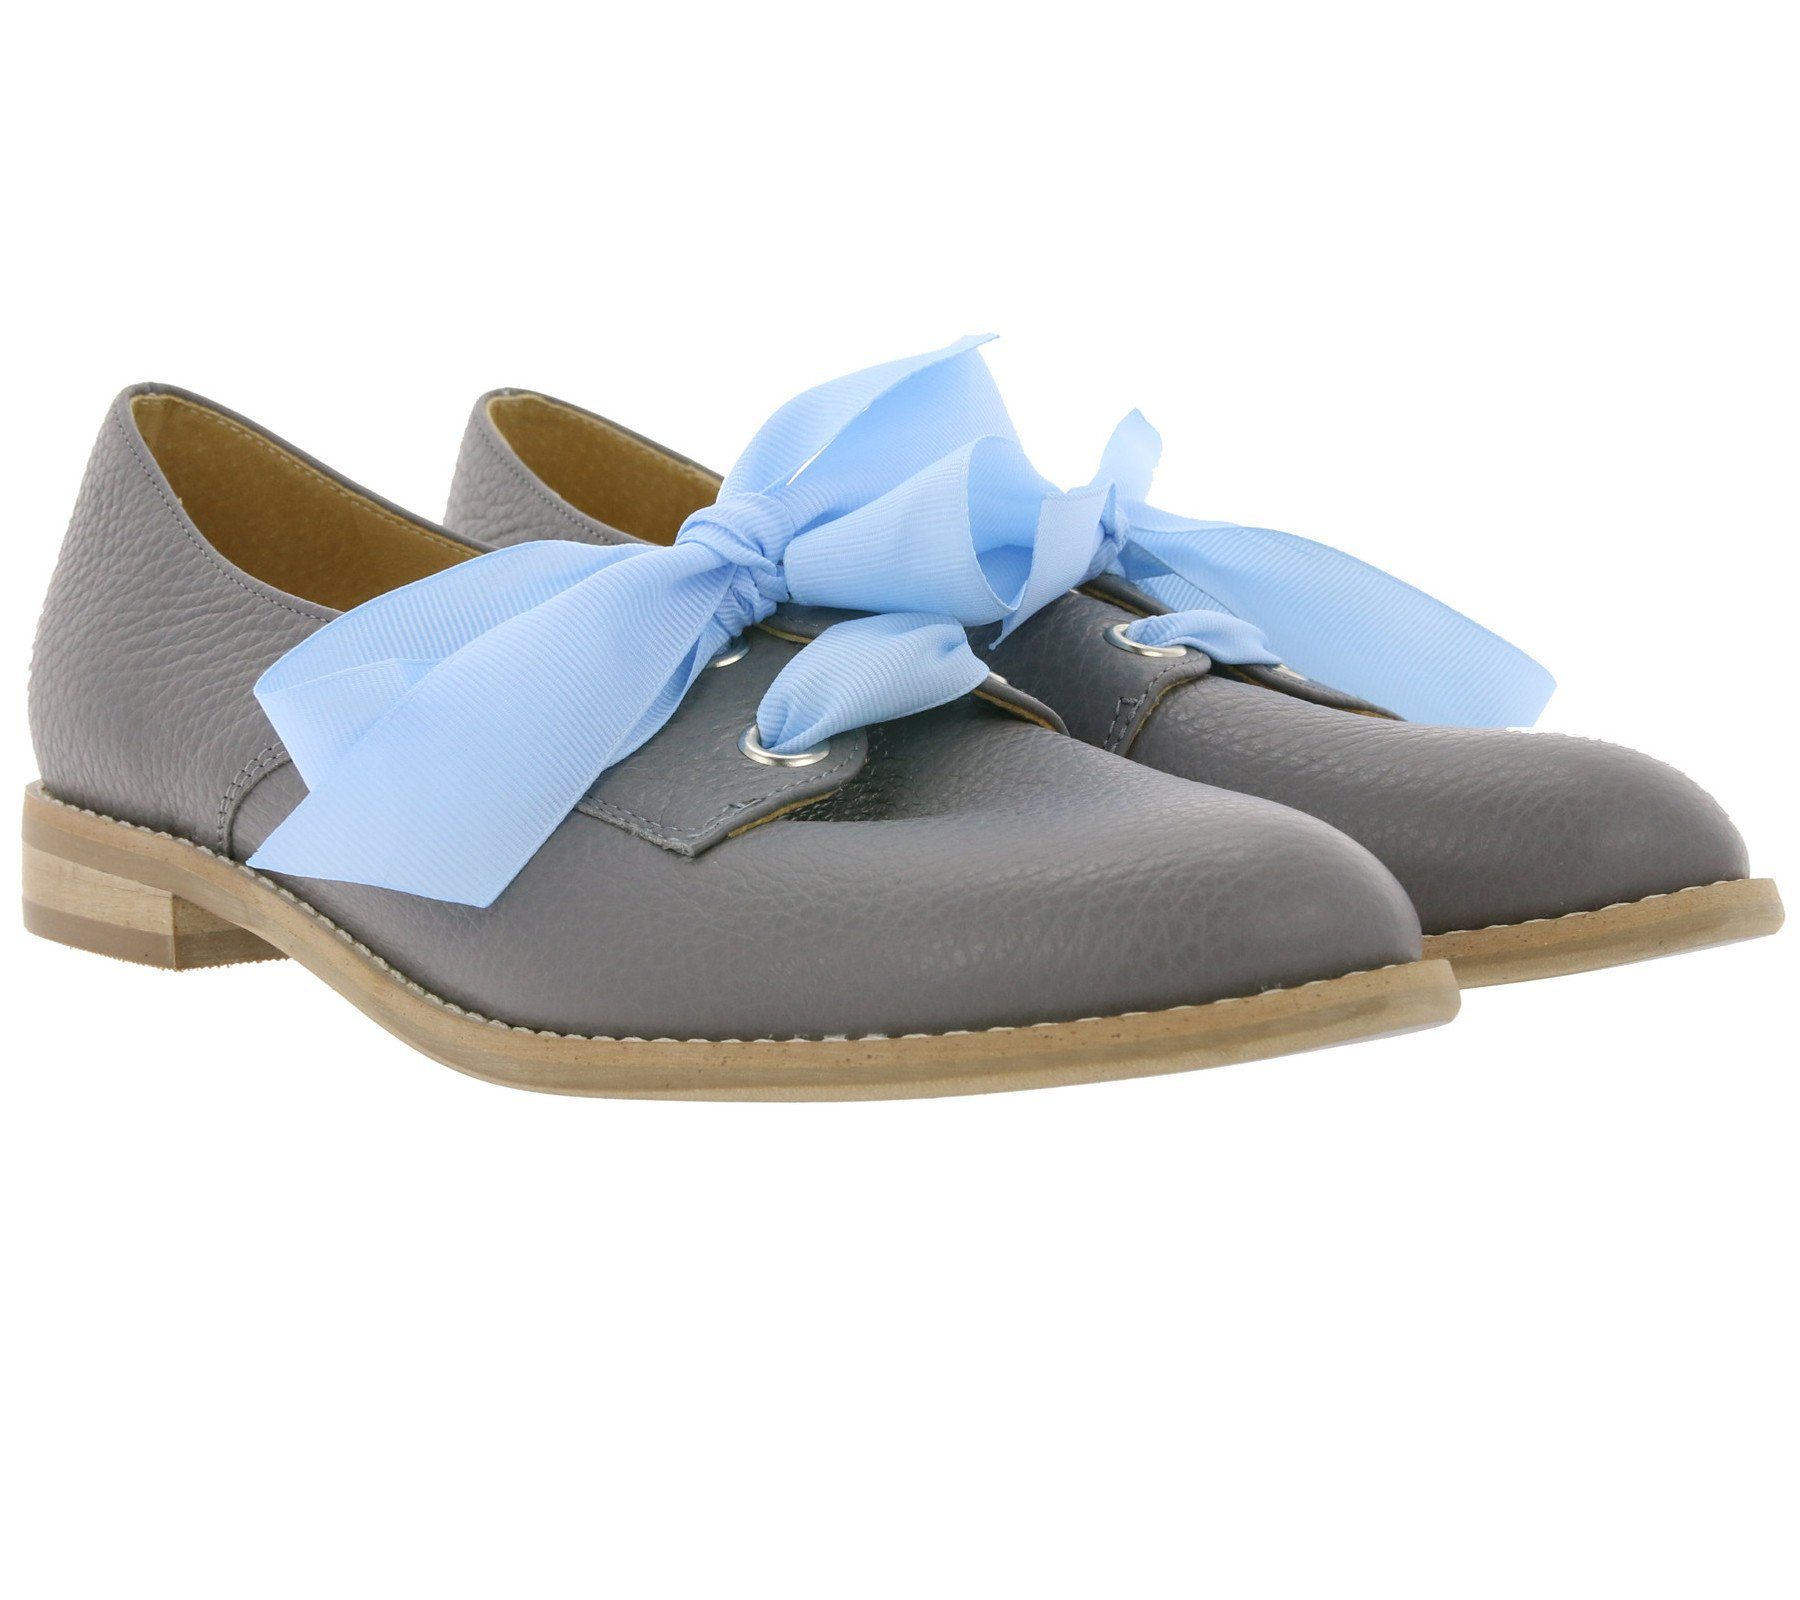 L37 »L37 Handmade Shoes Echtleder-Halbschuhe schicke Damen Schnürschuhe  Scandinavian Chic Freizeit-Schuhe Grau« Schnürschuh online kaufen | OTTO